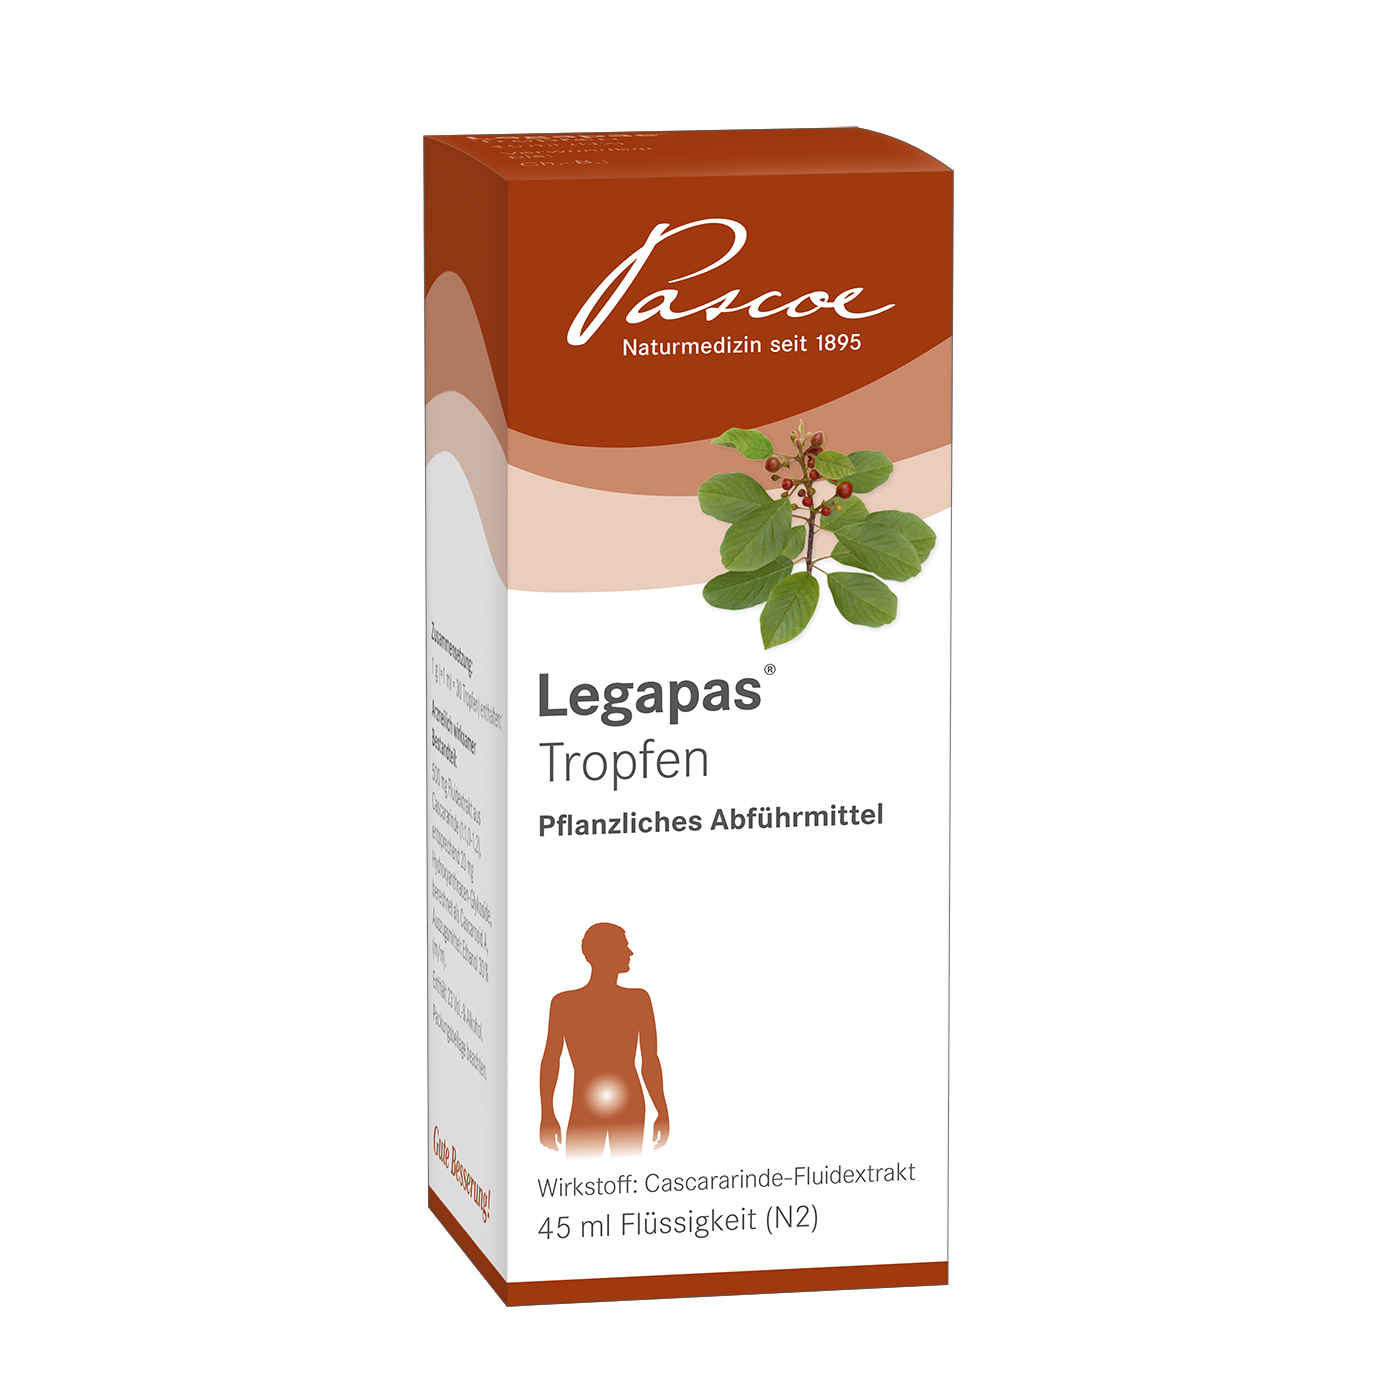 Legapas 45 ml Tropfen Packshot PZN 01516674